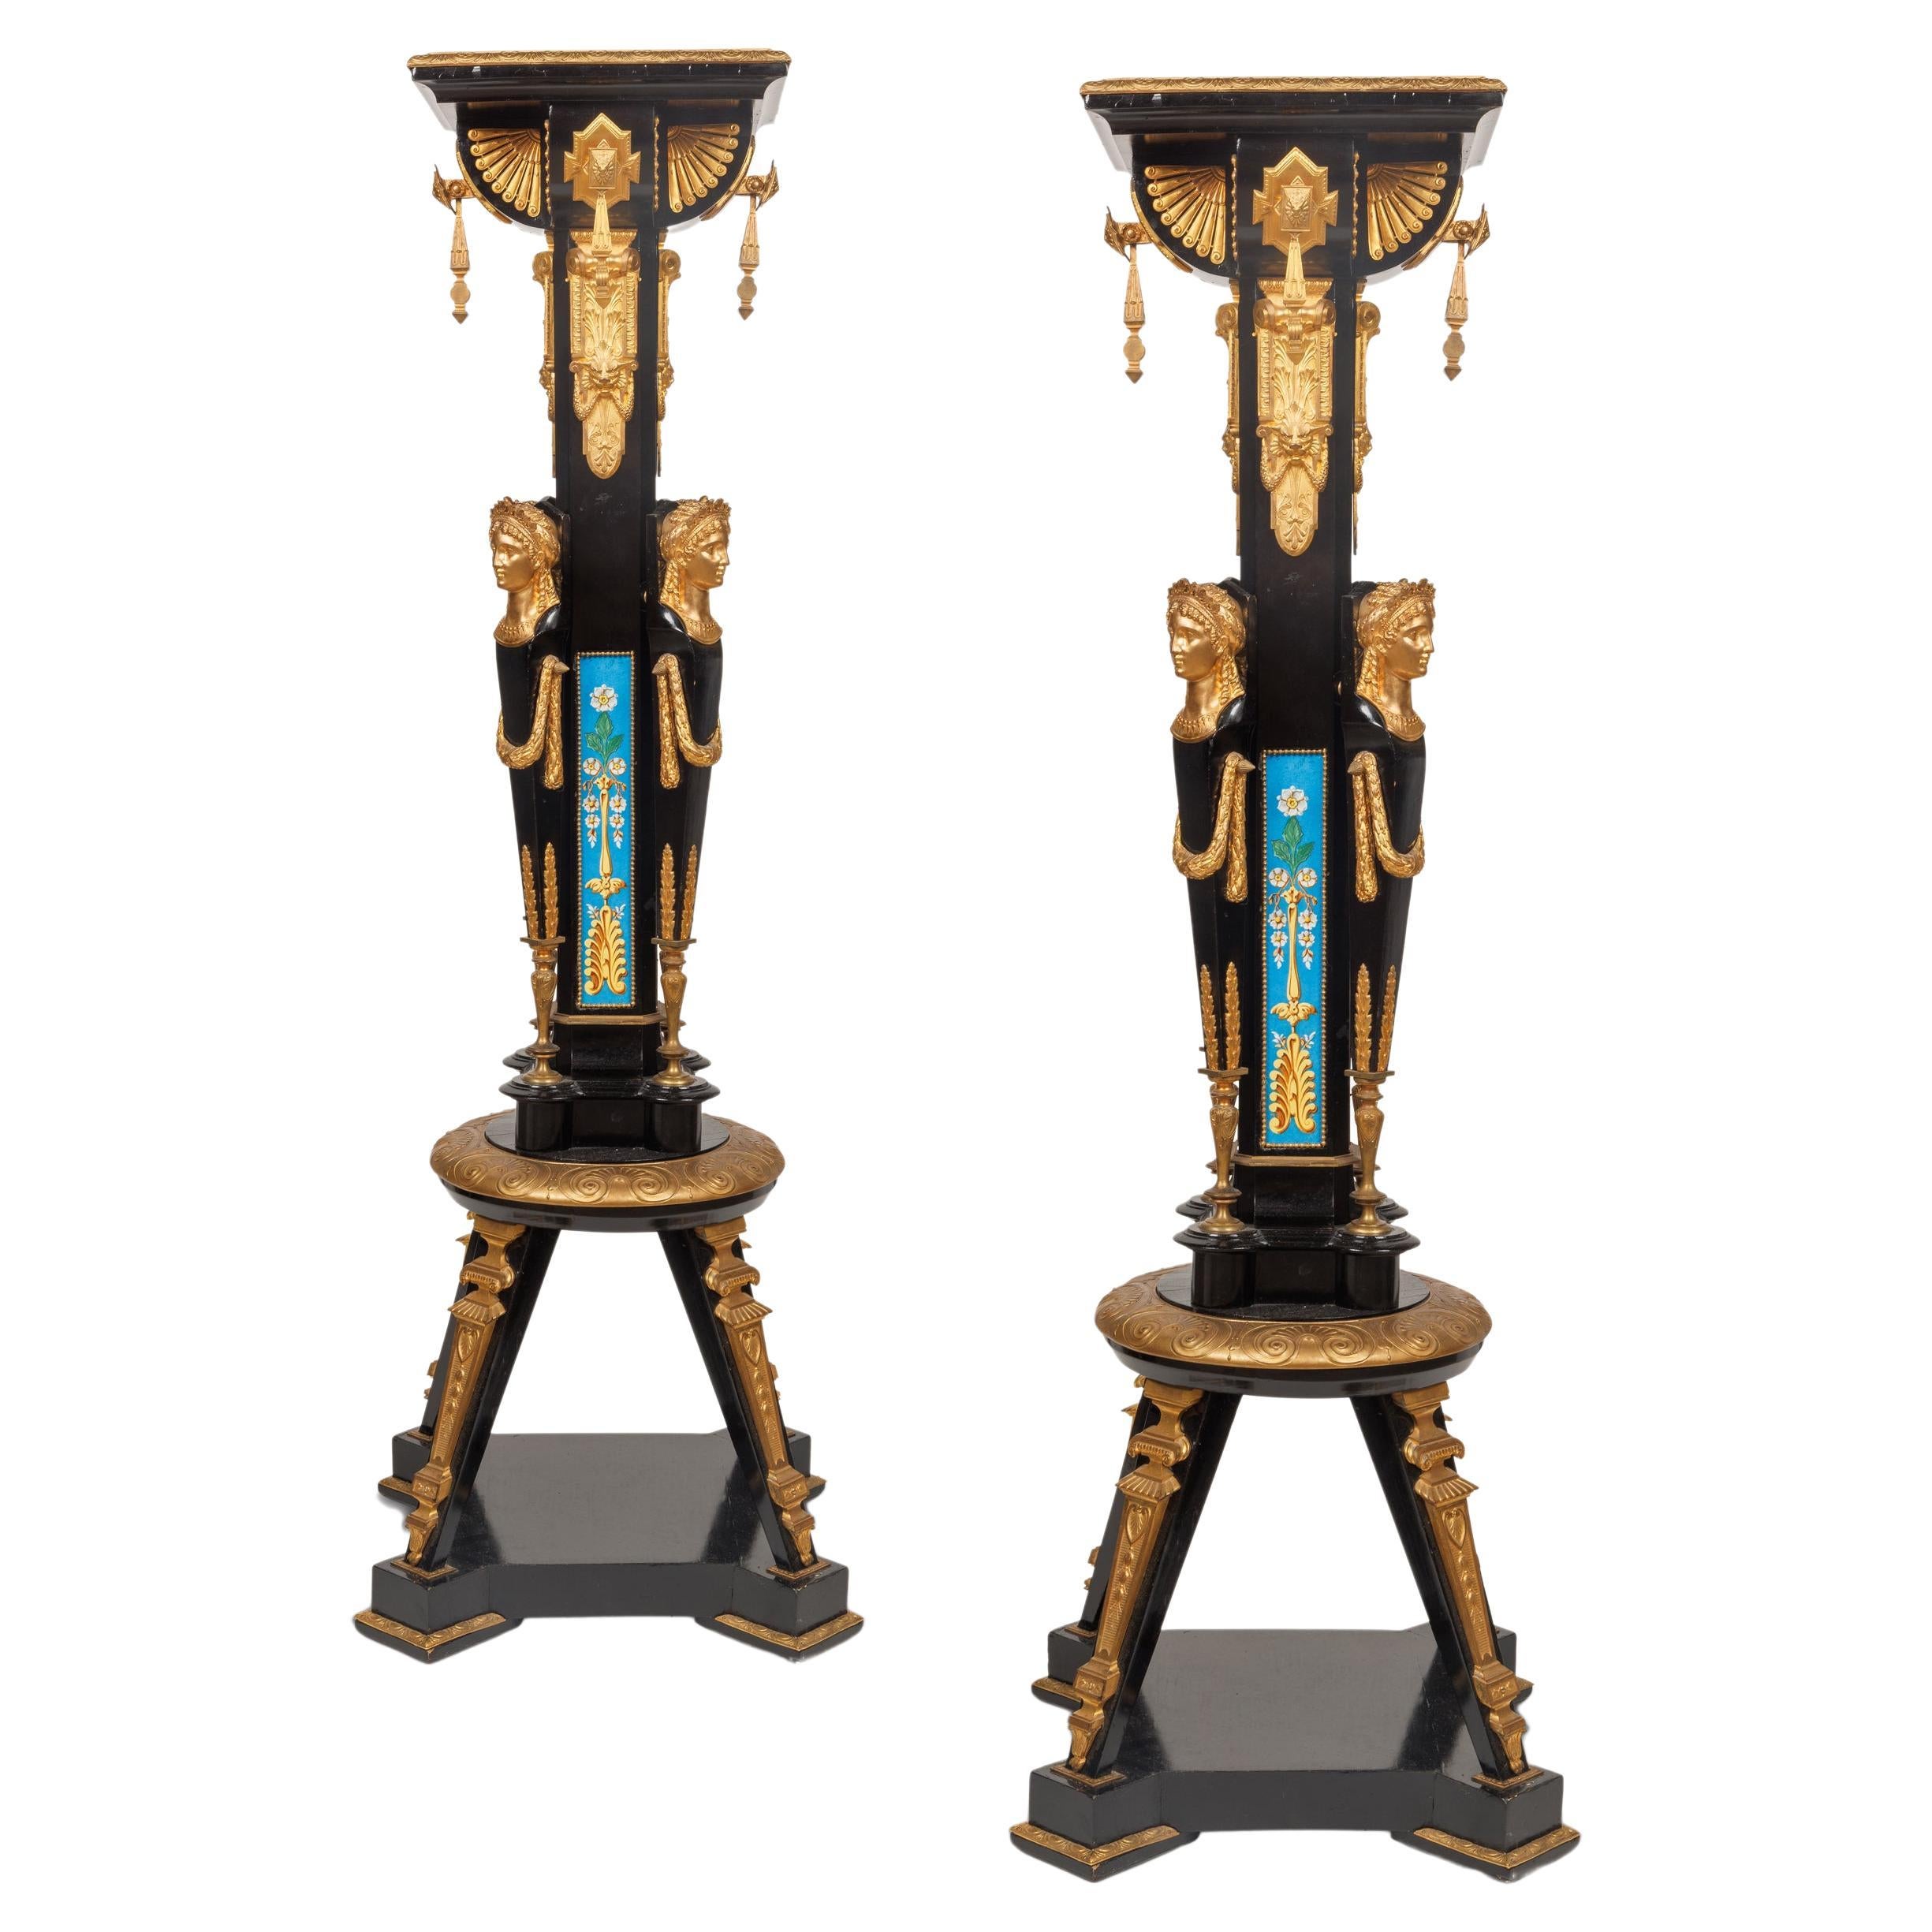 Ebony Pedestals and Columns